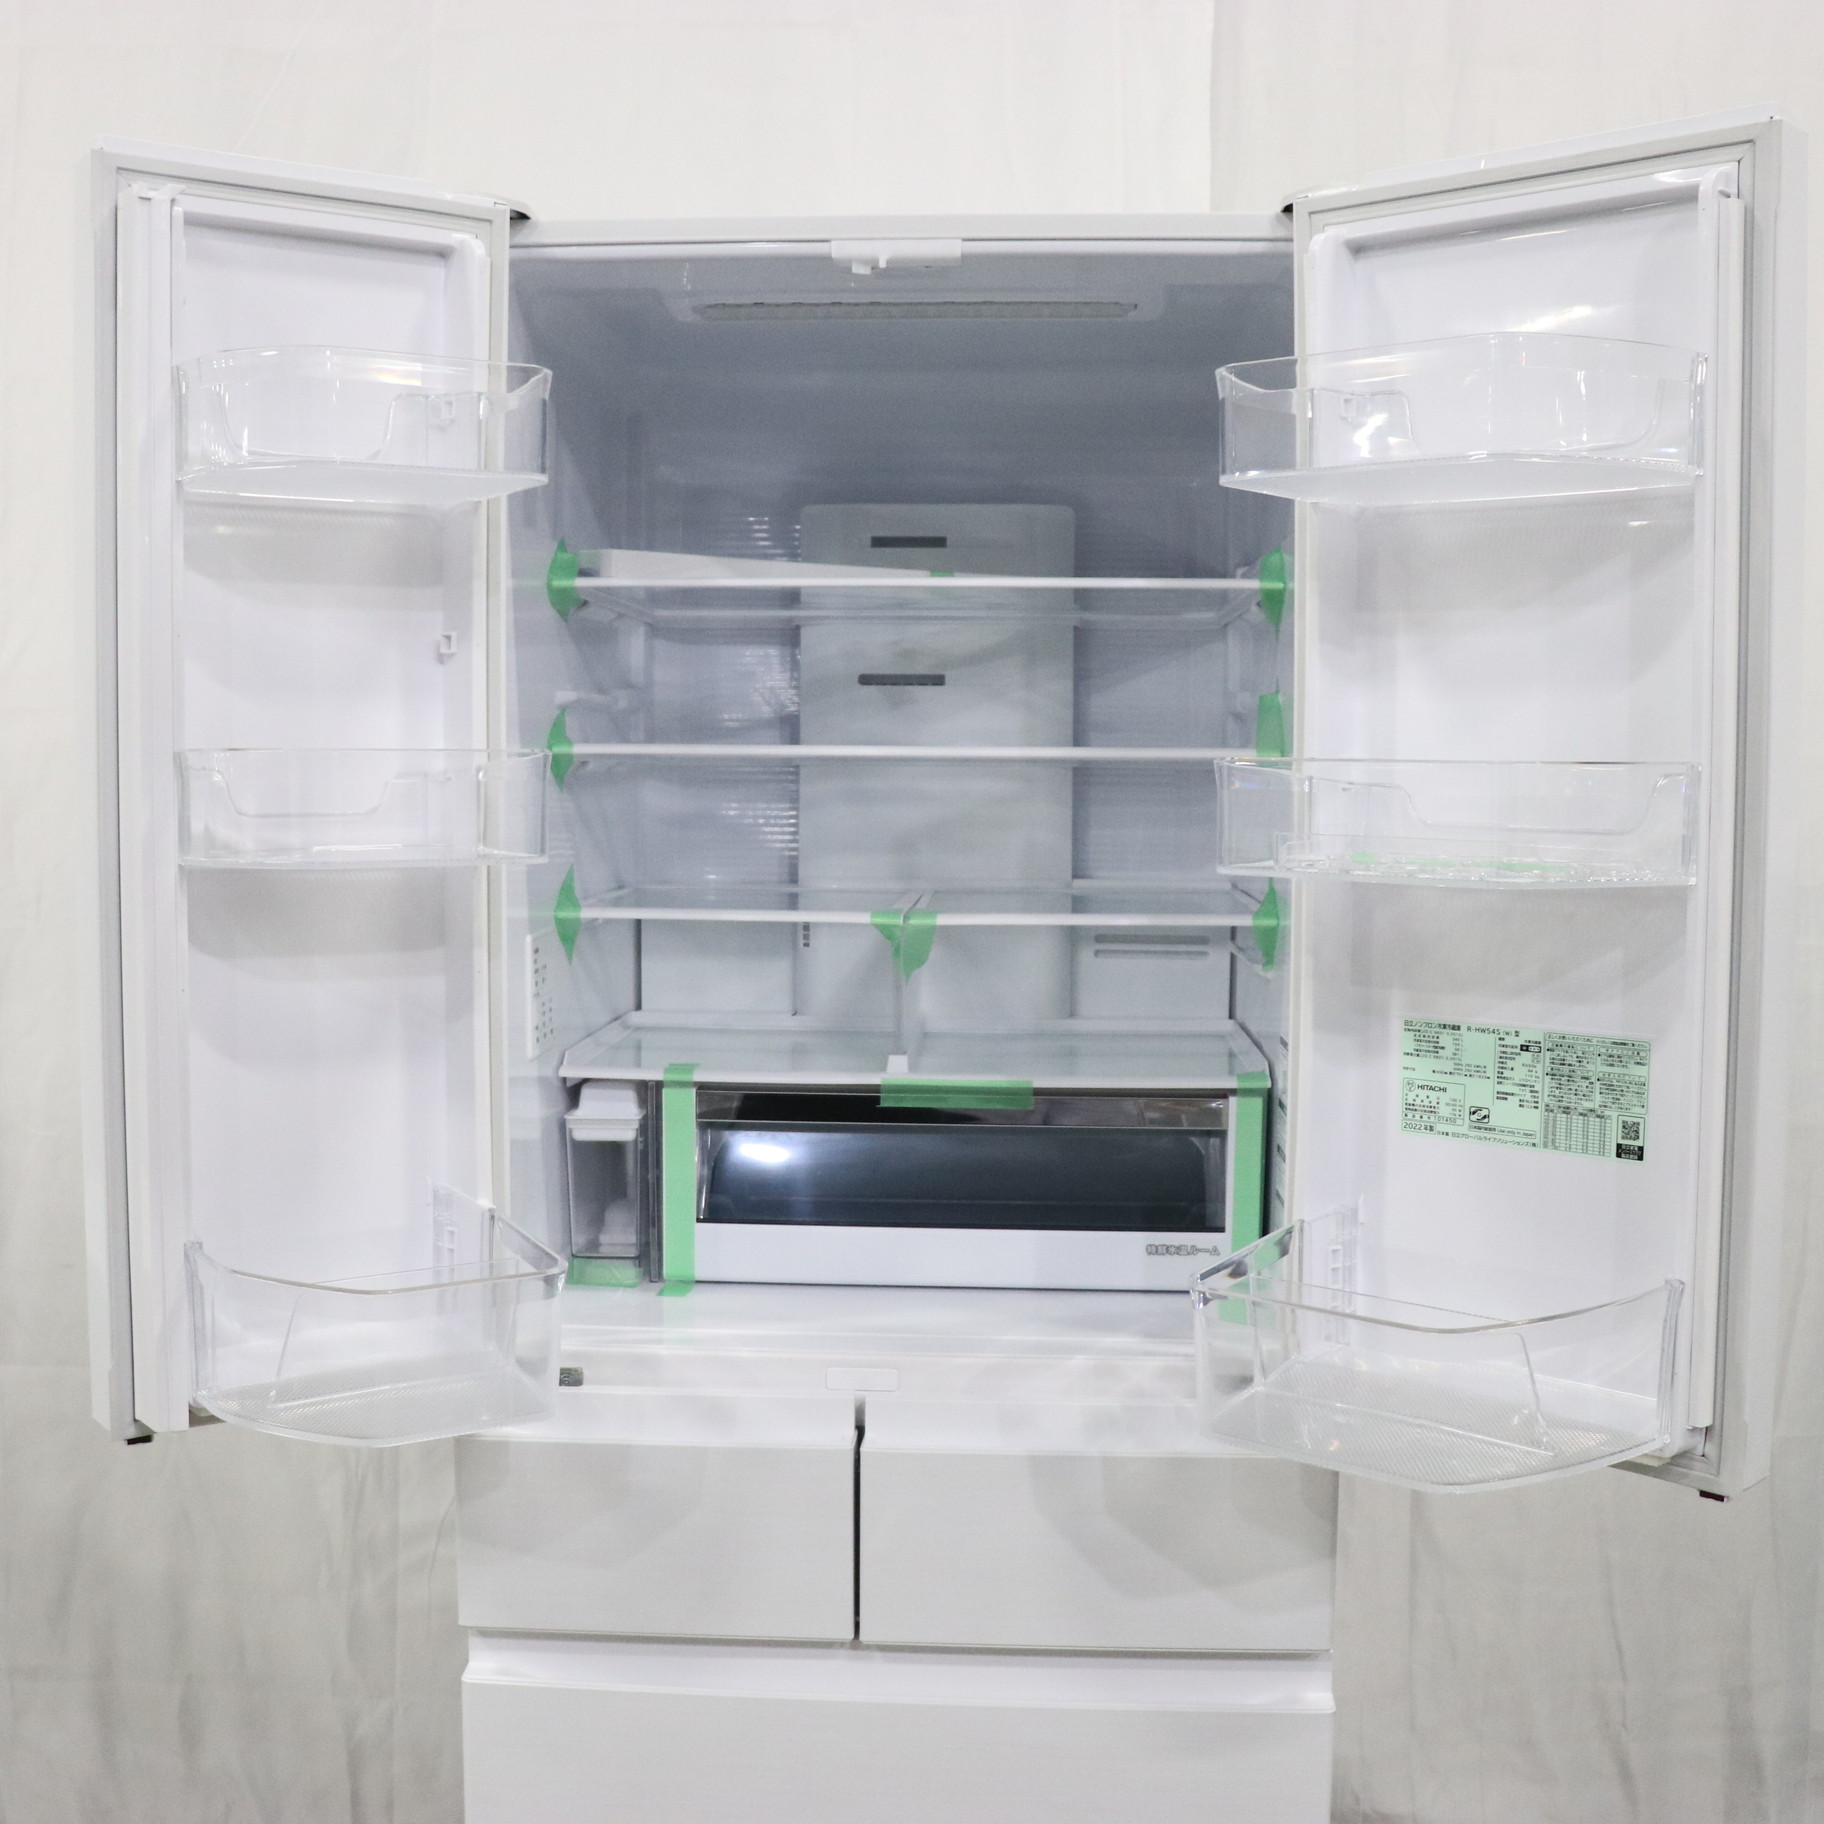 2022年製 日立 ノンフロン冷凍冷蔵庫 540L R-HW54S まるごとチルド 新鮮スリープ野菜室 - キッチン家電